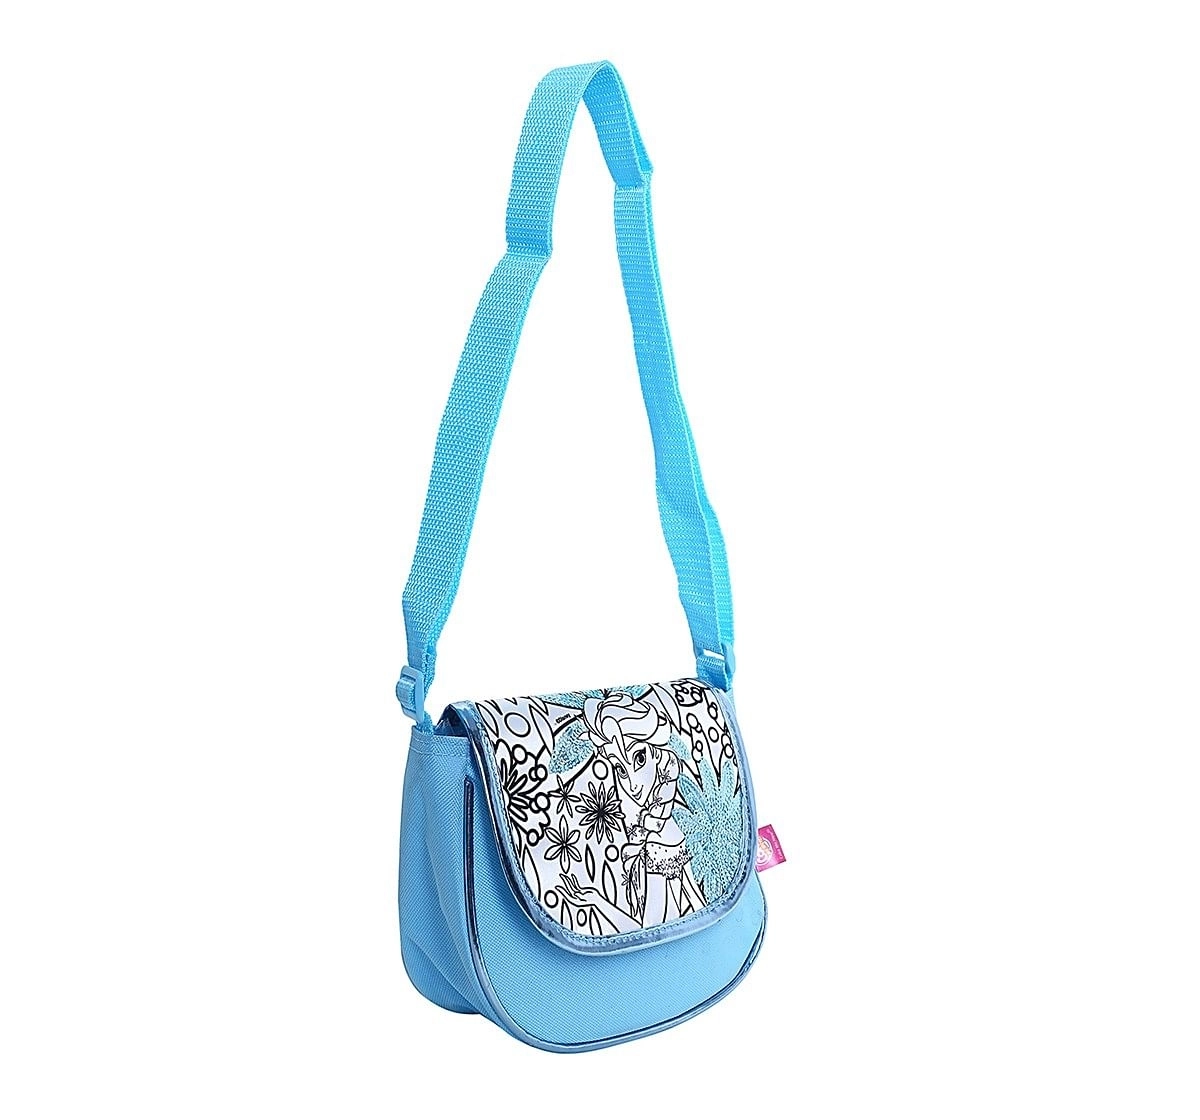 Disney Simba Color Me Mine Spring Sequin Bag - Frozen, Blue DIY Art & Craft Kits for Kids age 6Y+ 